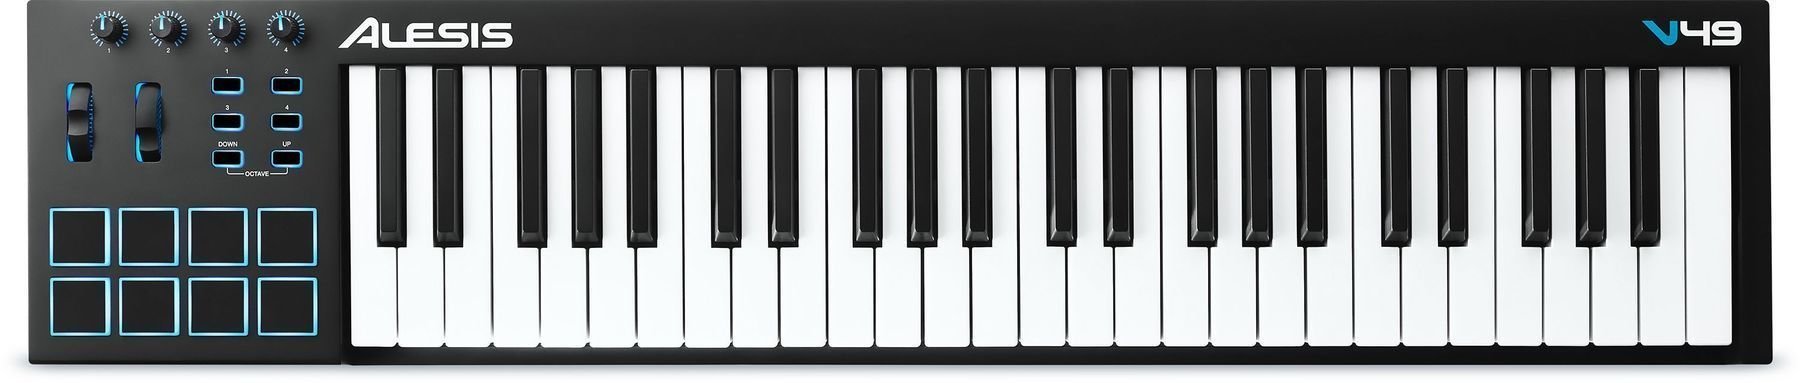 Master-Keyboard Alesis V49 USB-MIDI